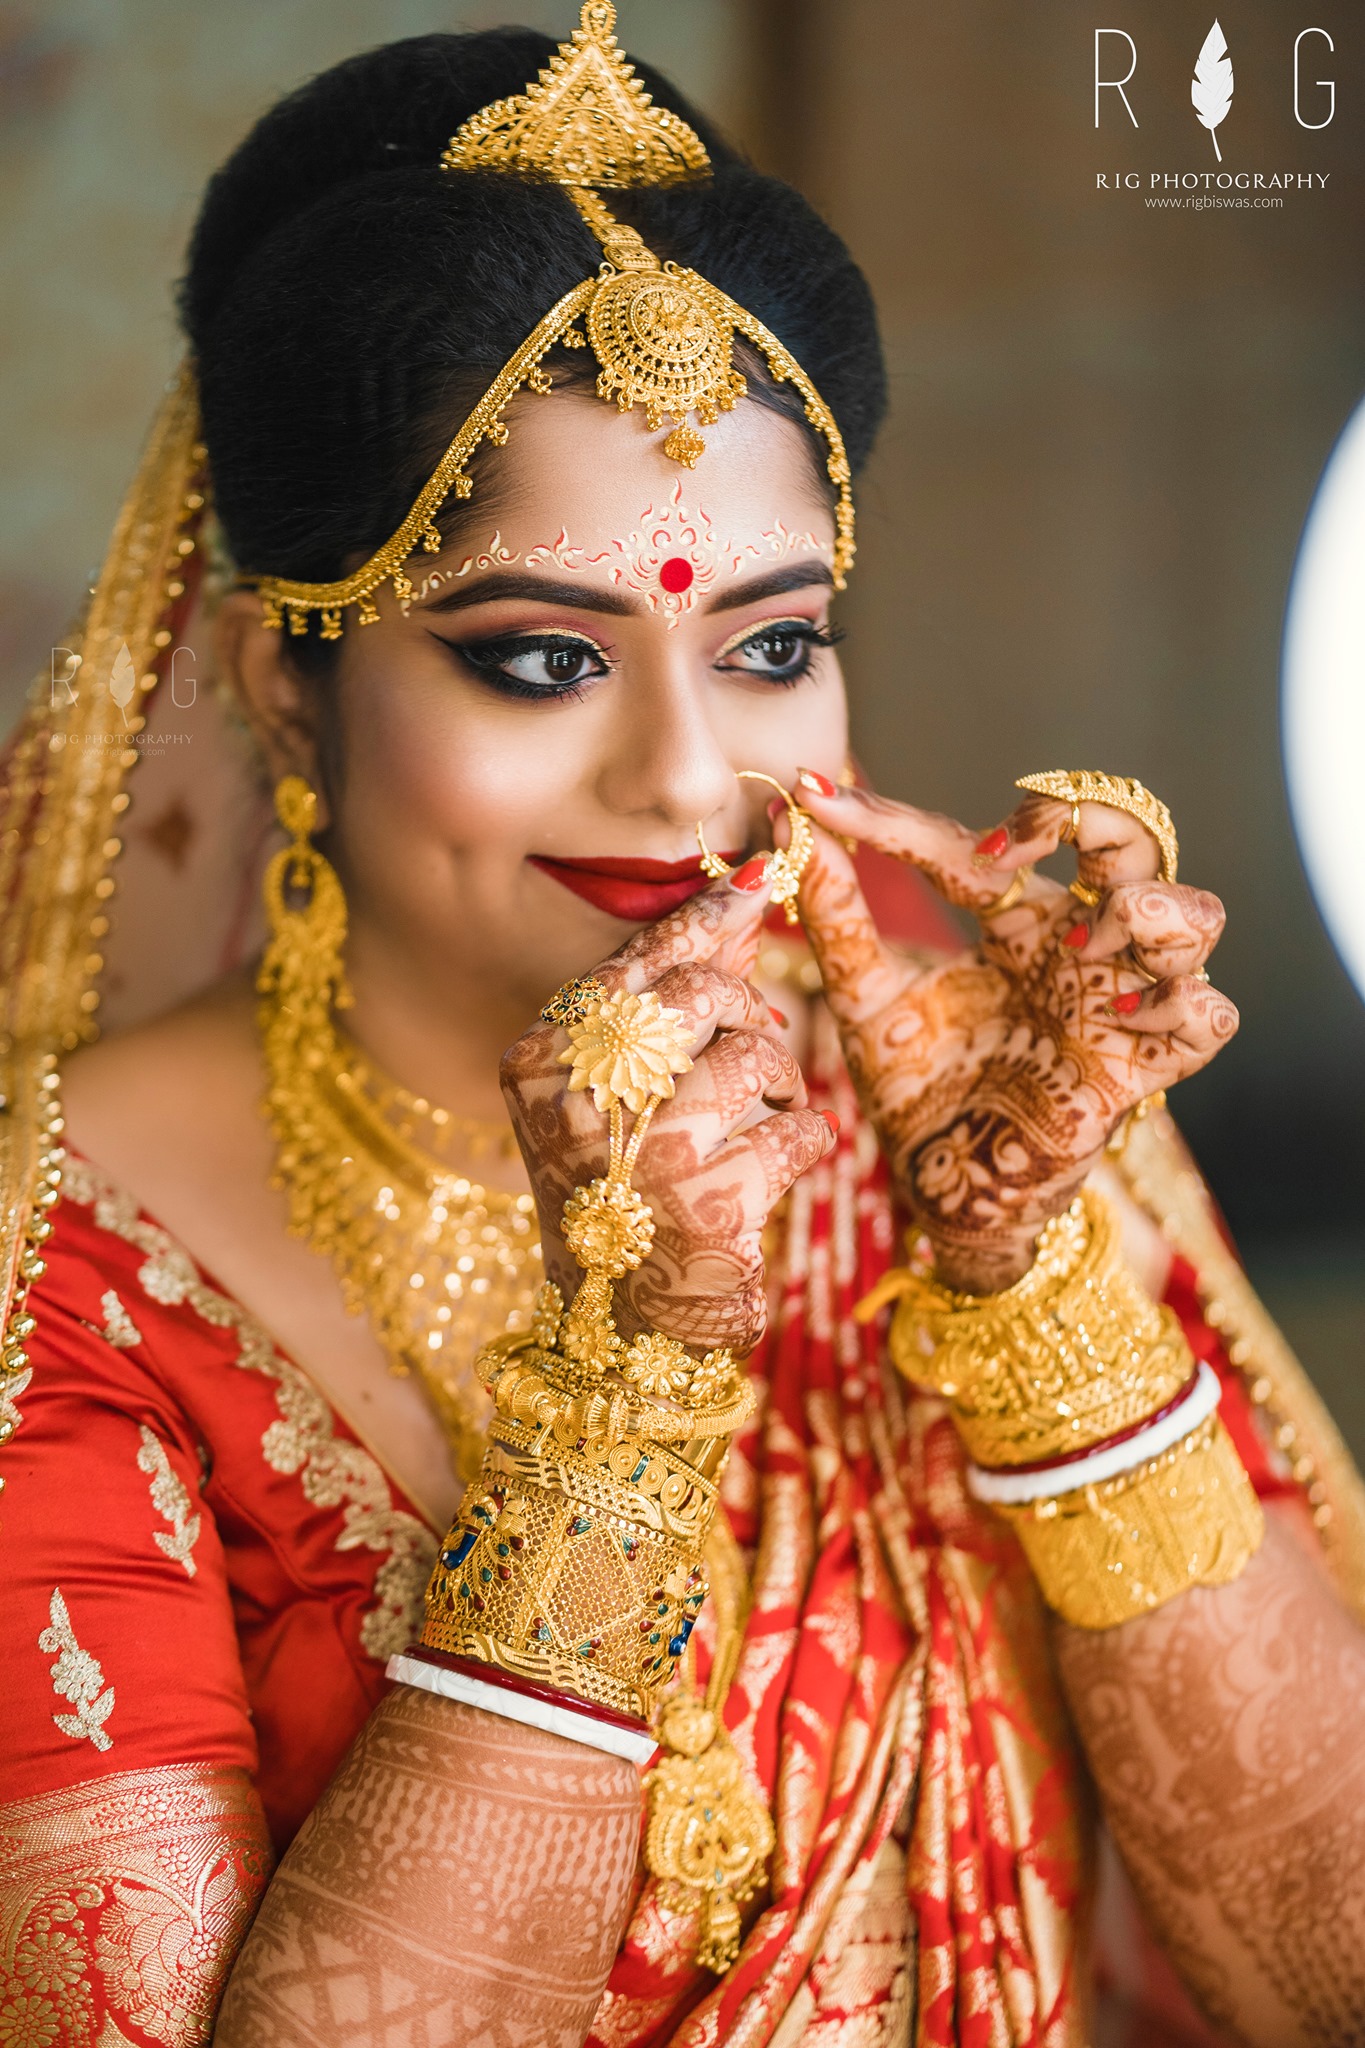 Divya Weds Naveen Wedding Stories Photography Images  Latest Wedding  Stories Poses  The Wedding Focus